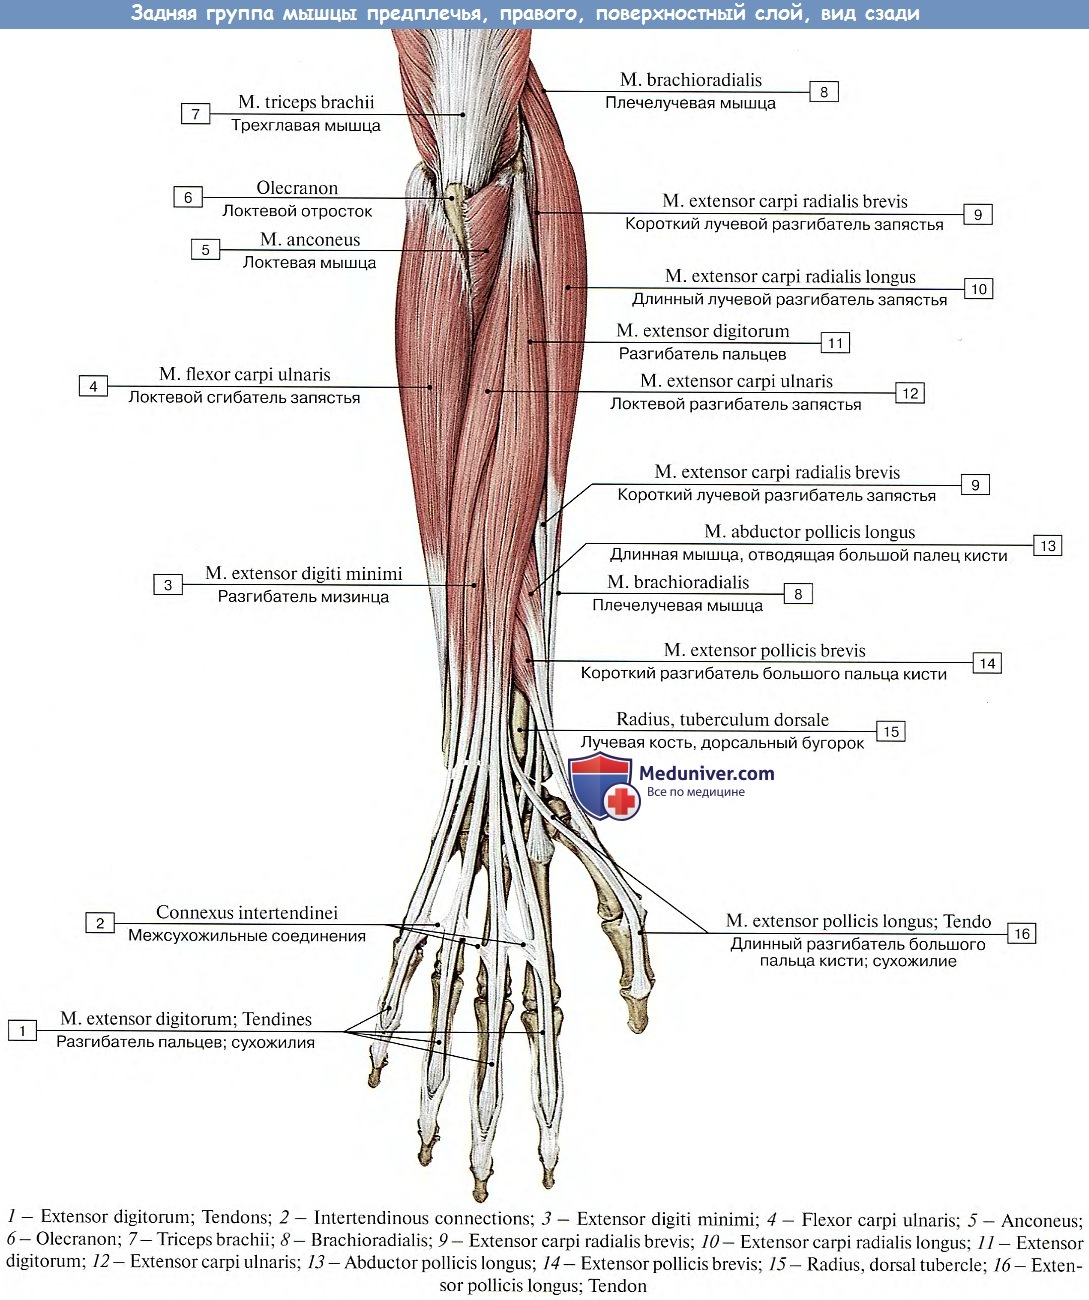 Сгибатель латынь. Мышцы предплечья анатомия задняя группа. Мышцы предплечья задняя группа 2 слоя. Мышцы предплечья разгибатели анатомия. Мышцы предплечья анатомия задняя группа поверхностный слой.